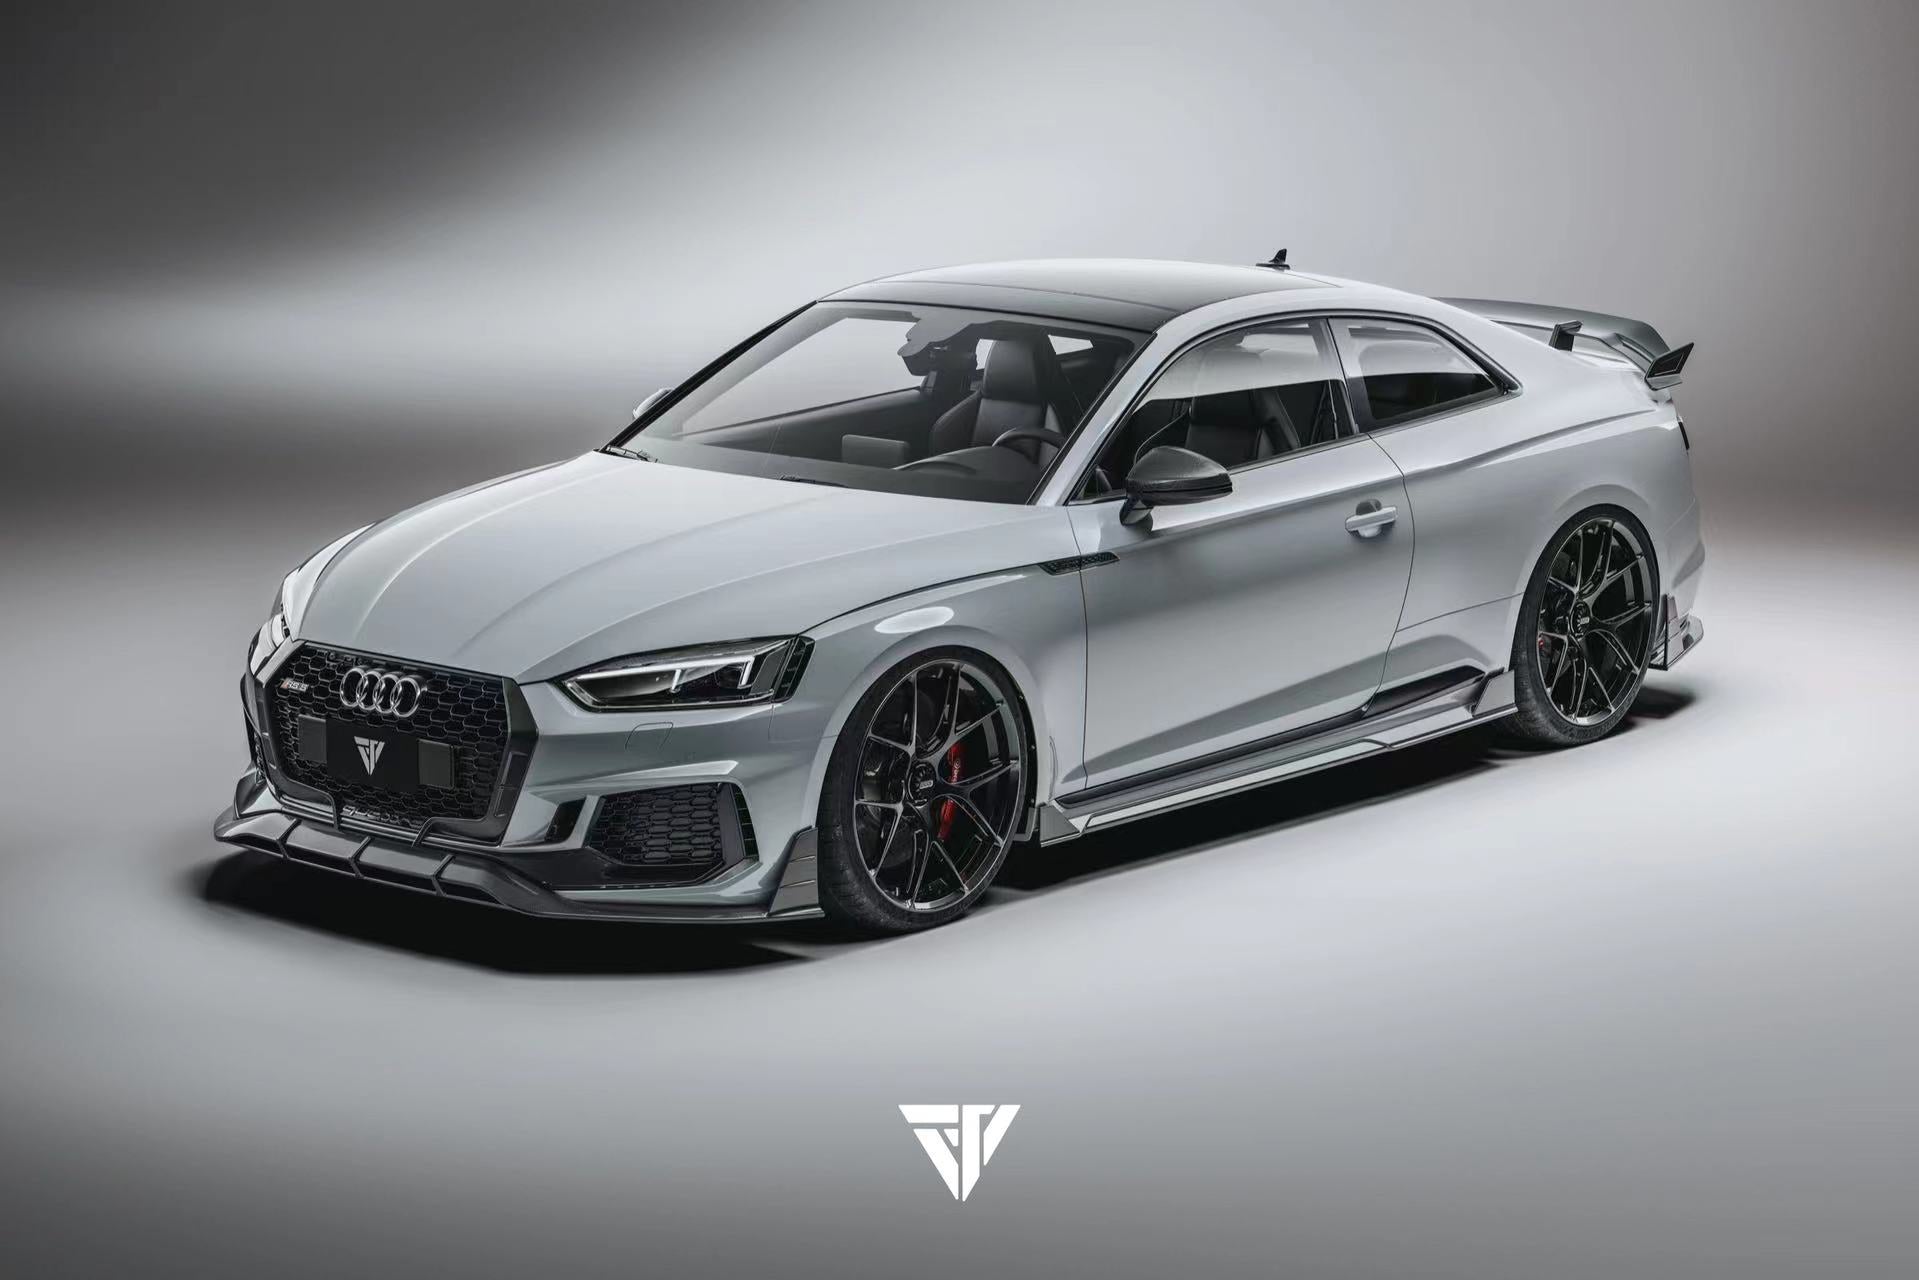 Future Design Carbon Fiber SIDE SKIRTS - "Blaze kit" for Audi RS5 B9 2 Door 2017-2019